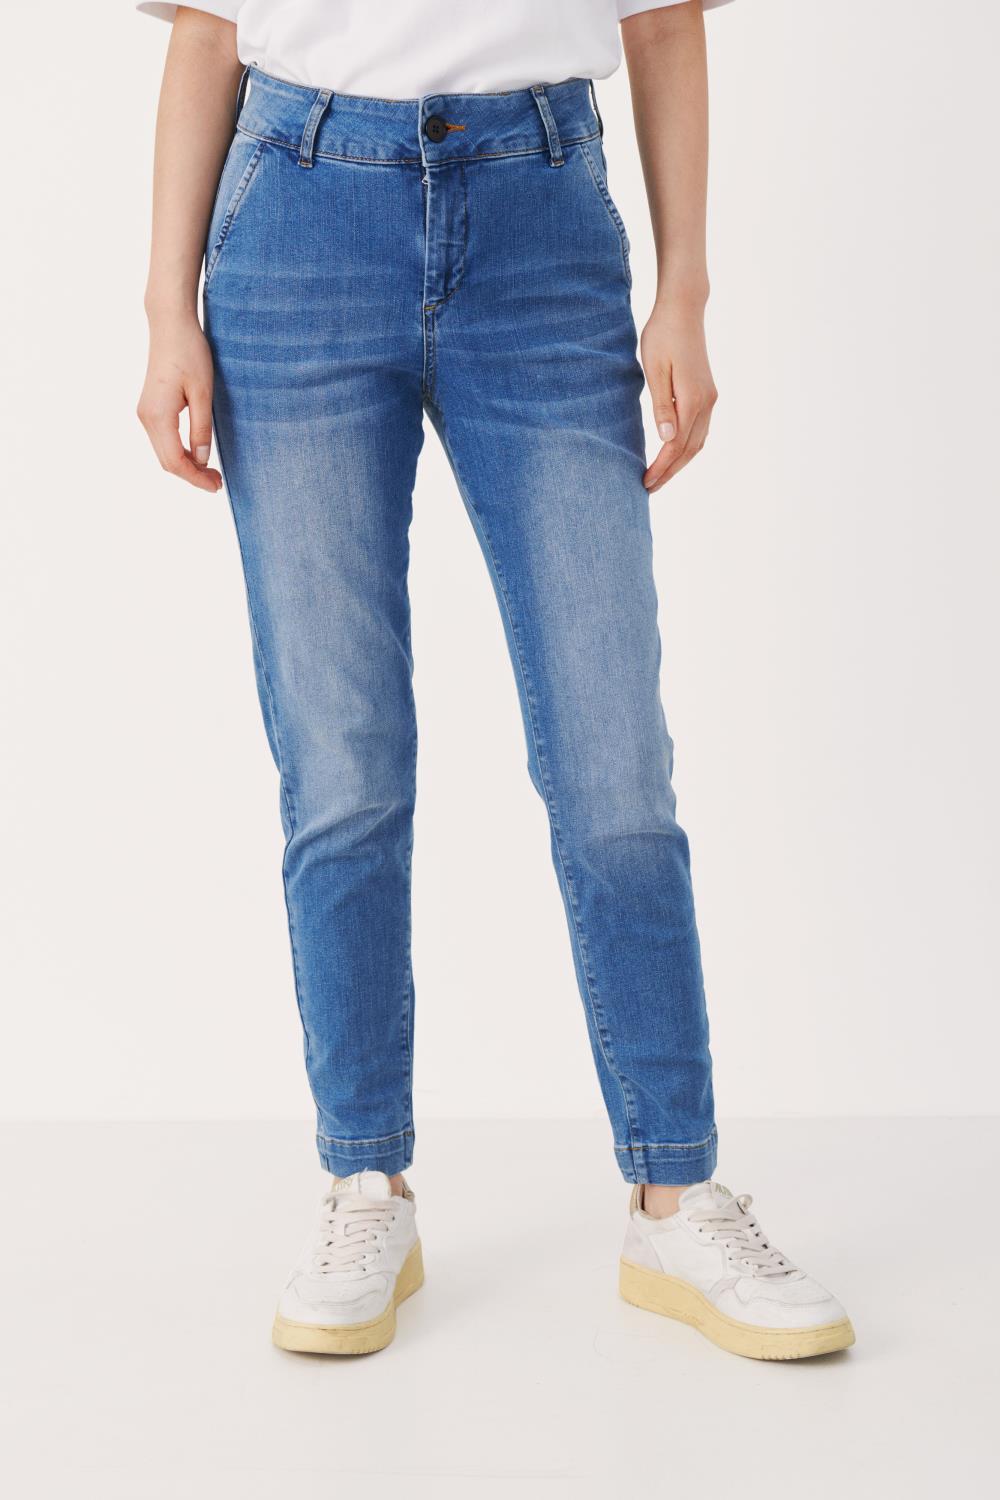 Part Two Sofia Jeans, regular waist, denimblå